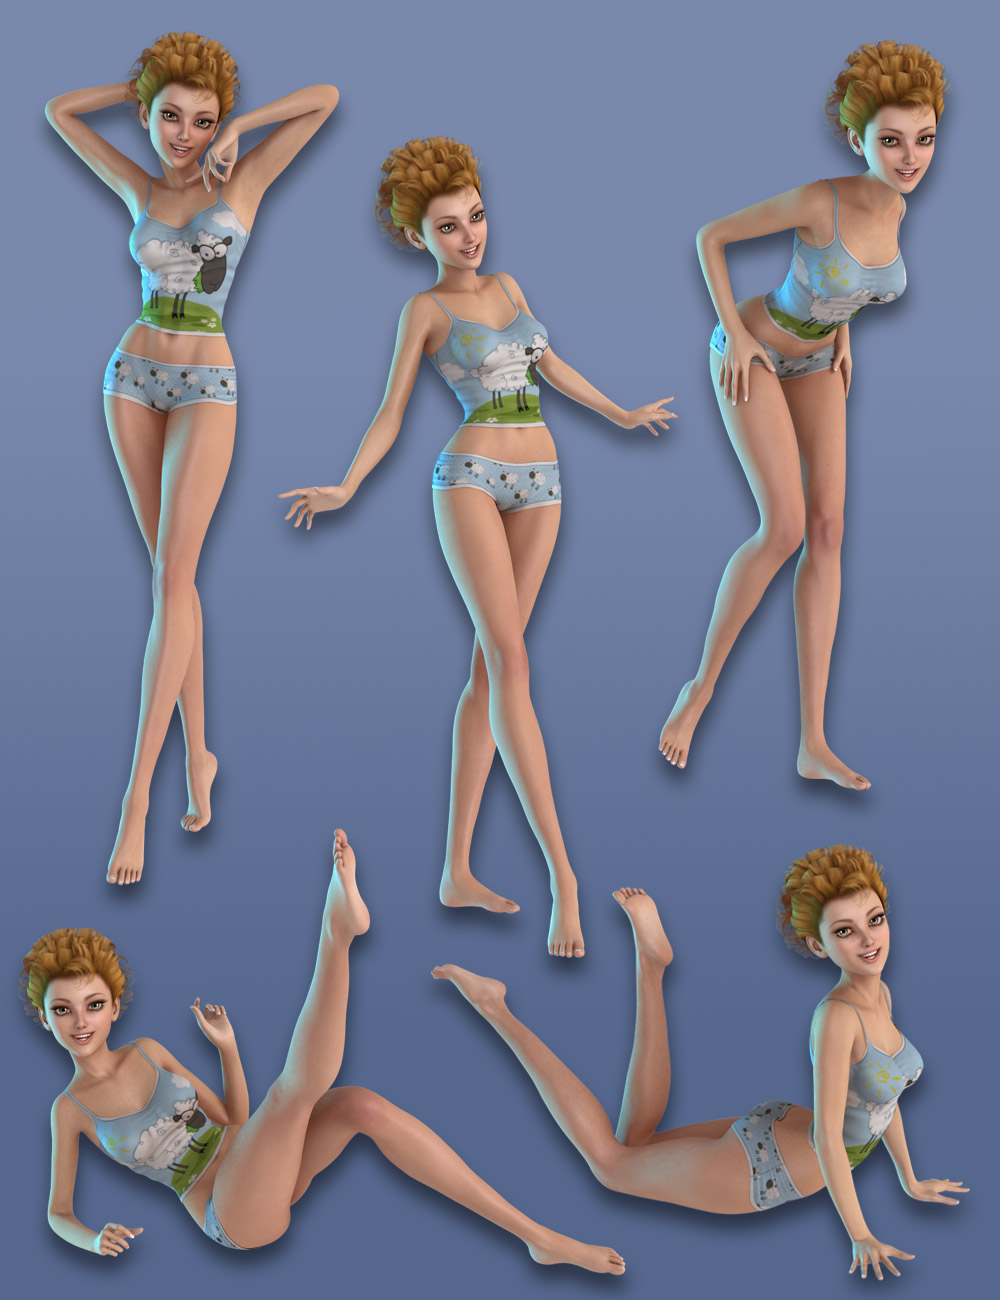 Capsces Flirtatious Poses for Aiko 6 by: Capsces Digital Ink, 3D Models by Daz 3D